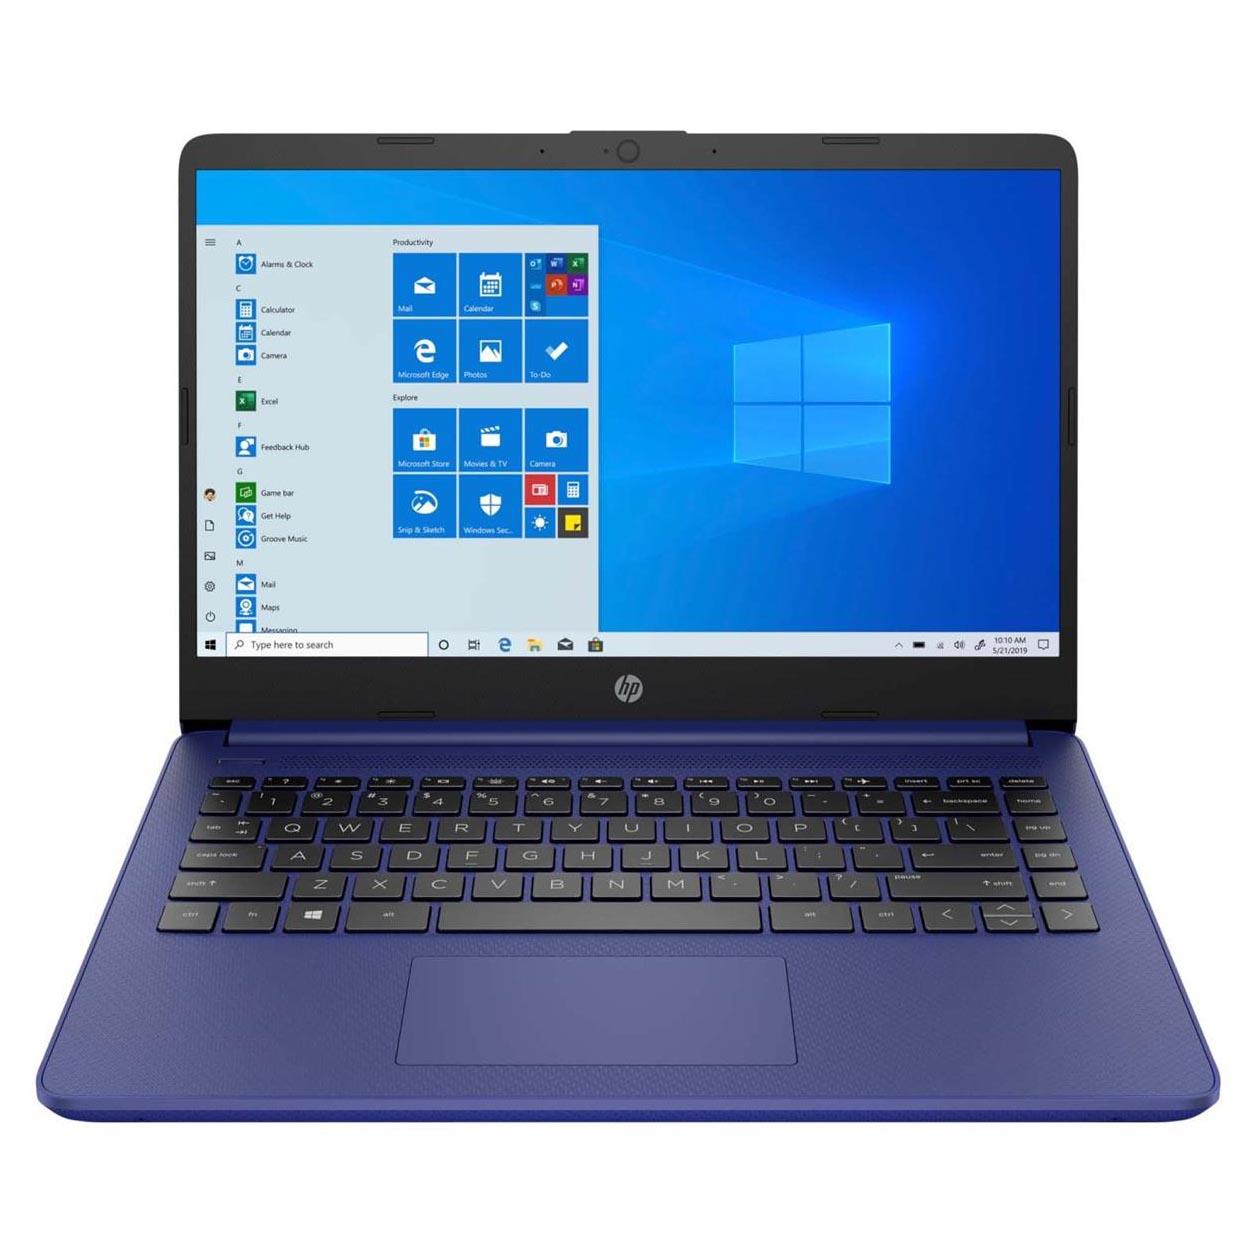 Ноутбук HP 14-dq0050nr, 14 HD Сенсорный, 4Гб/64Гб, Celeron N4020, сине-фиолетовый, английская клавиатура ноутбук hp 14 dq0050nr 14 hd сенсорный 4гб 64гб celeron n4020 сине фиолетовый английская клавиатура